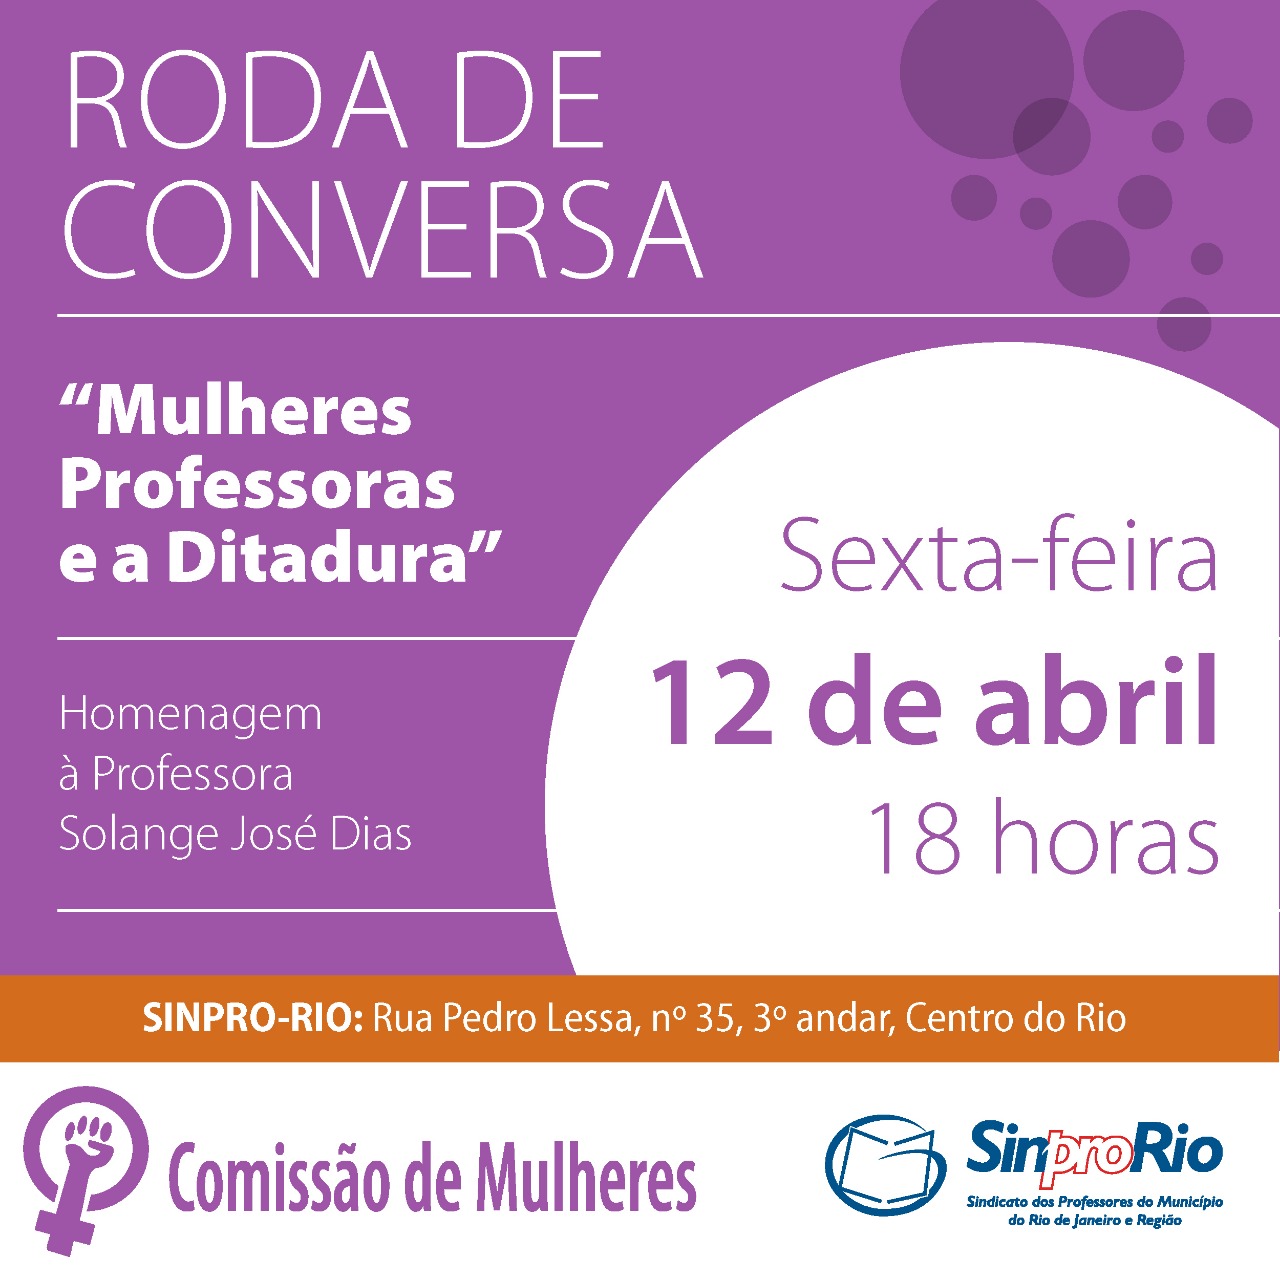 RODA DE CONVERSA “Mulheres Professoras e a Ditadura”.